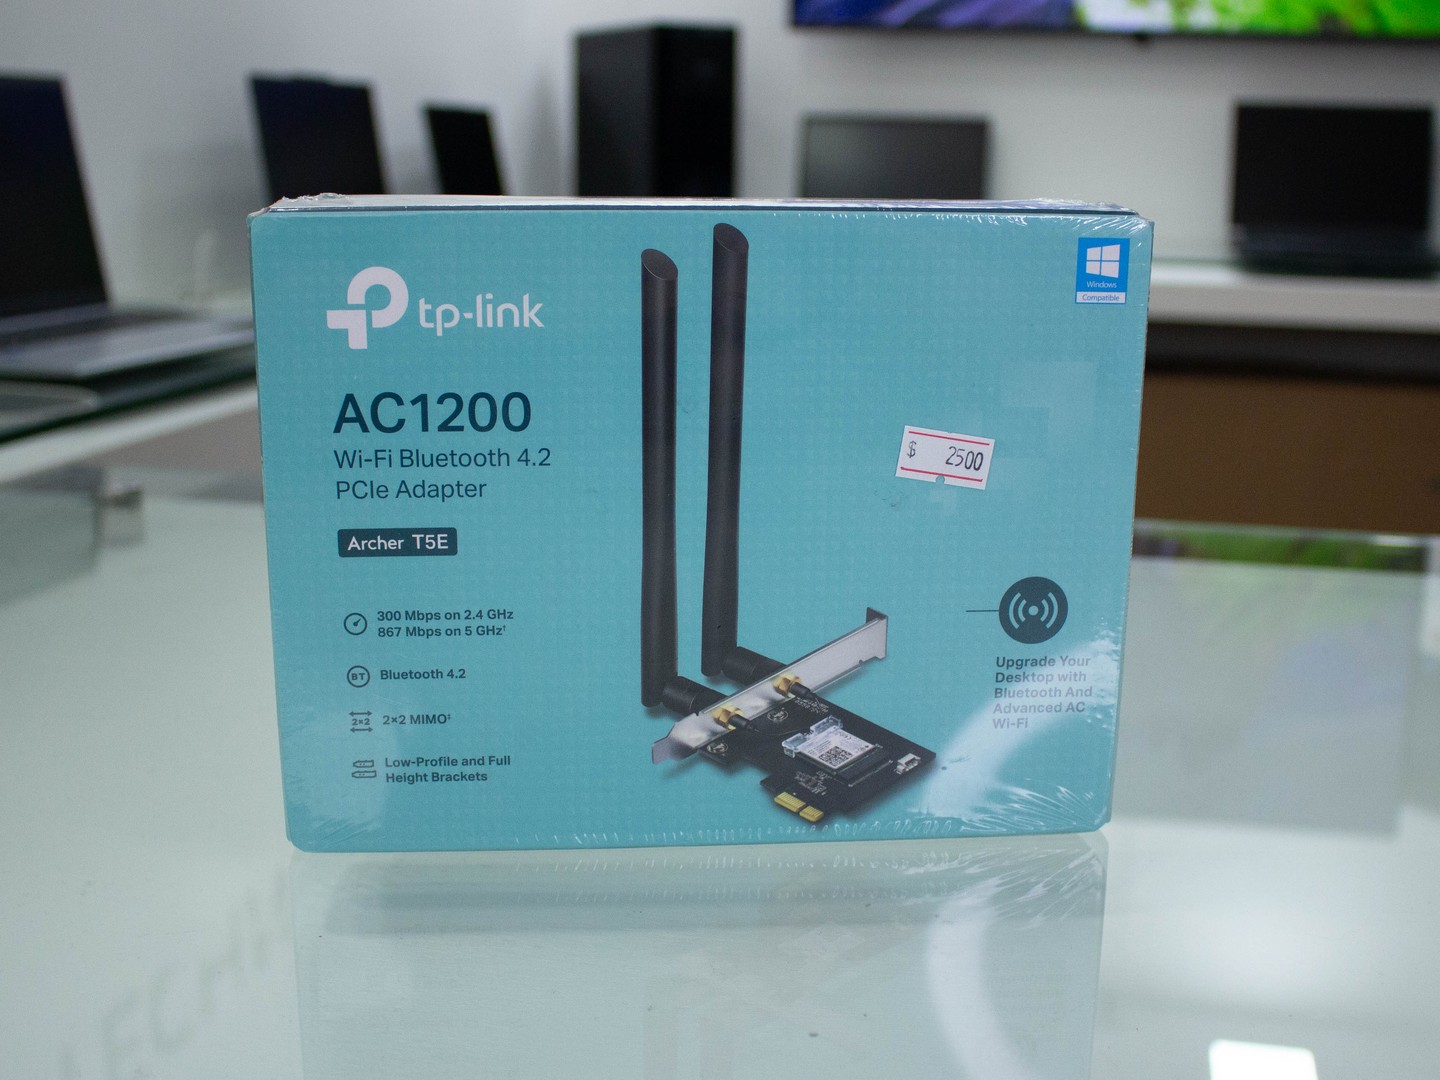 computadoras y laptops - WiFi Bluetooth 4.2 PCI TP-Link AC1200 PCIe PC (Archer T5E)
 0